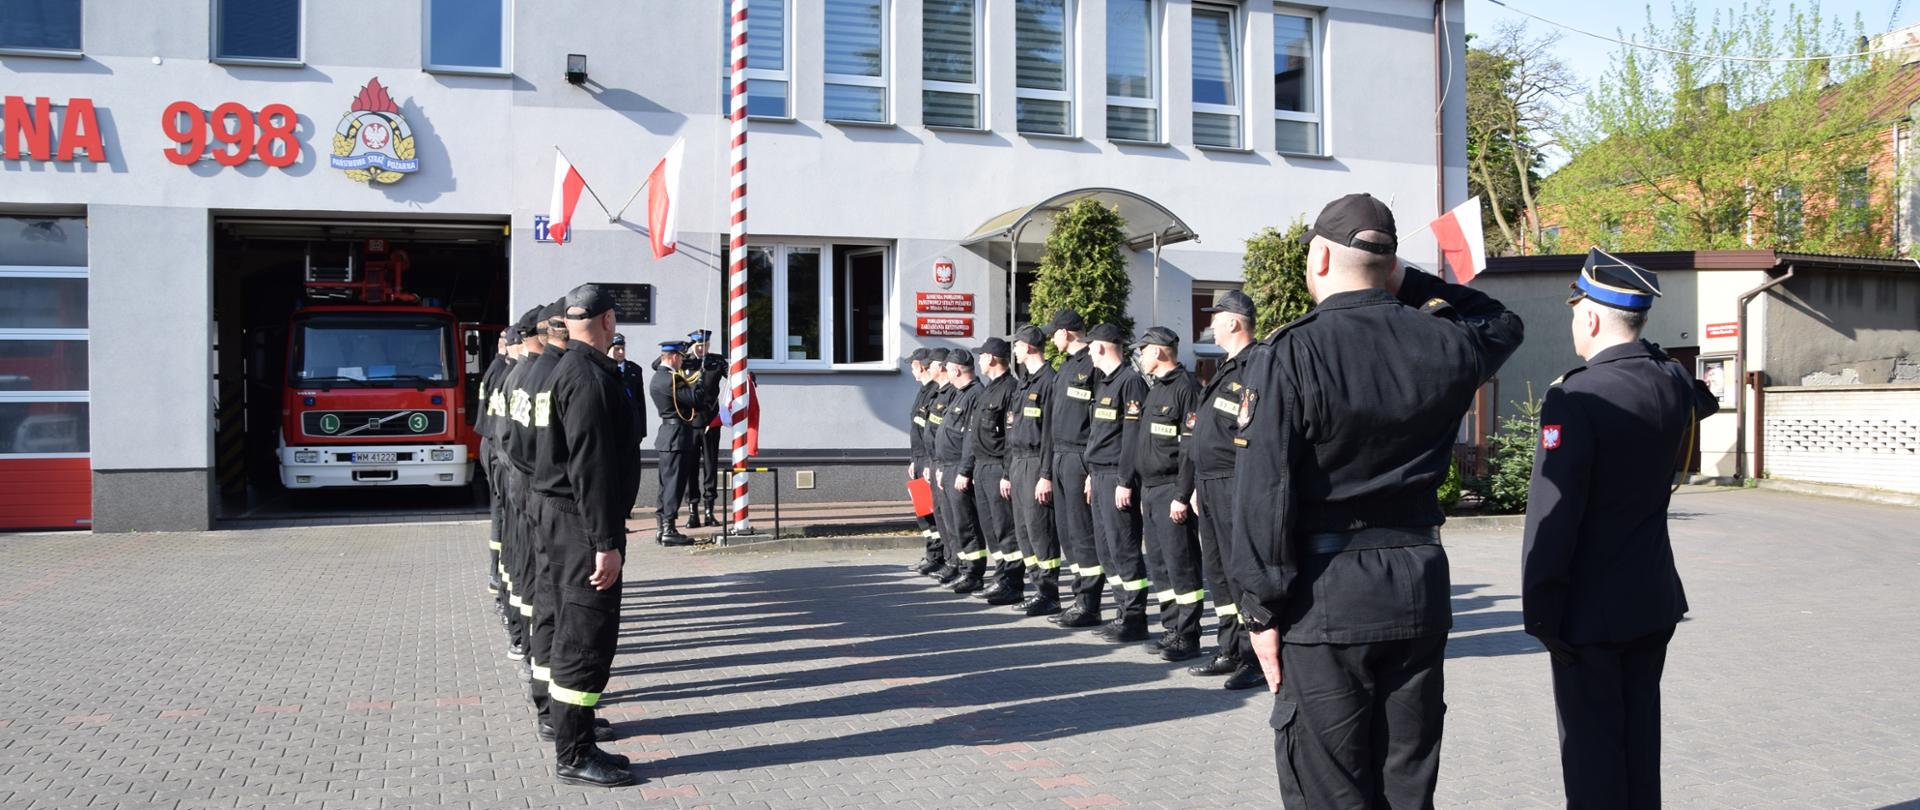 Uroczysta zmiana służby przed budynkiem KP PSP w Mińsku Mazowieckim. Poczet flagowy przygotowuje się do wciągnięcia flagi na maszt. Dwie zmiany służbowe stoją w szeregach na przeciwko siebie. Wszyscy stoją na baczność